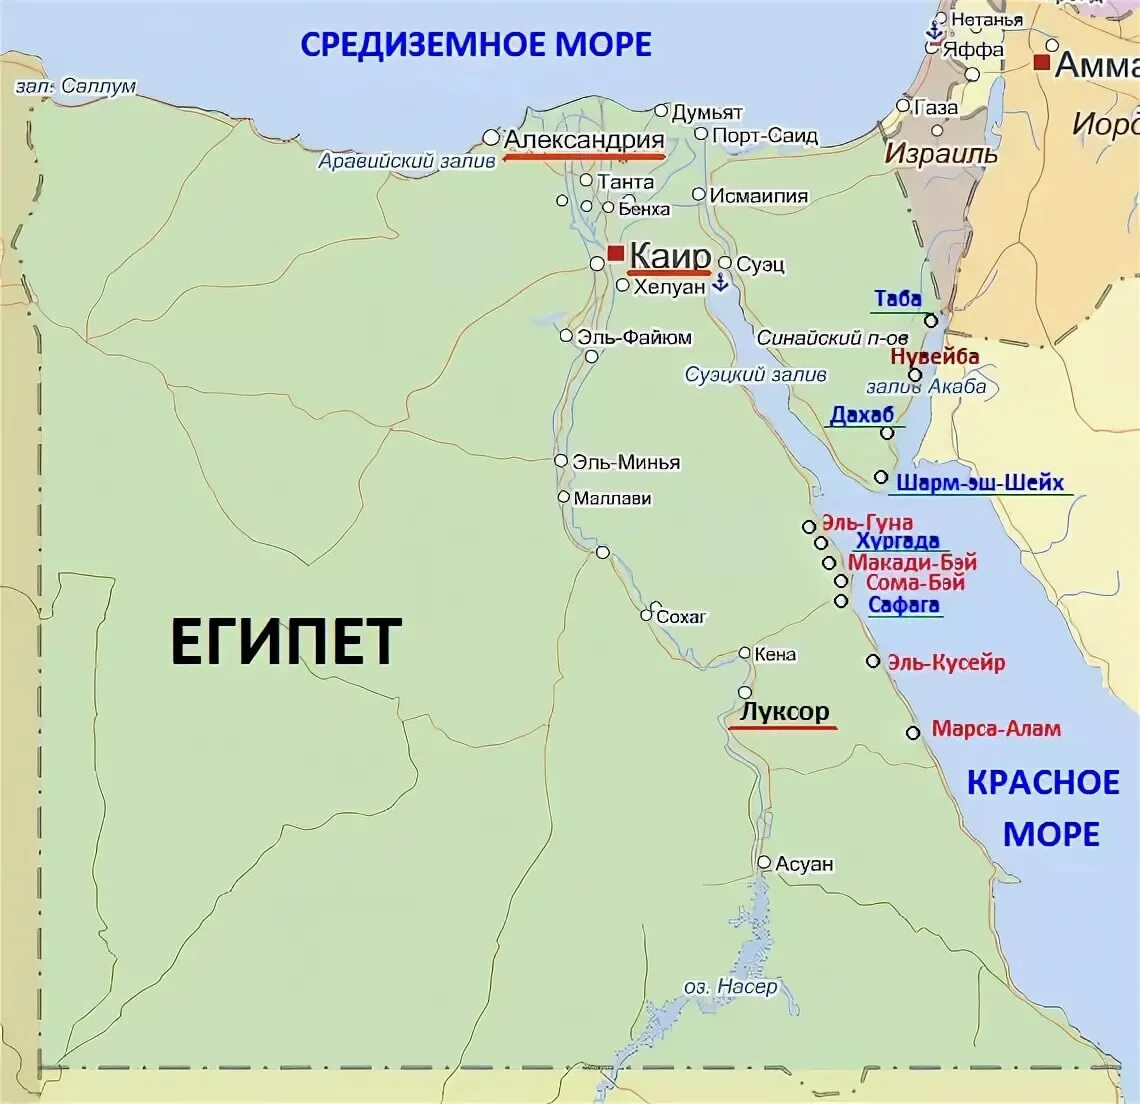 Курорты Египта на карте. Границы Египта на карте. Карта Египта на русском языке с городами и курортами. Карта Египта на русском с курортами. Код города египет